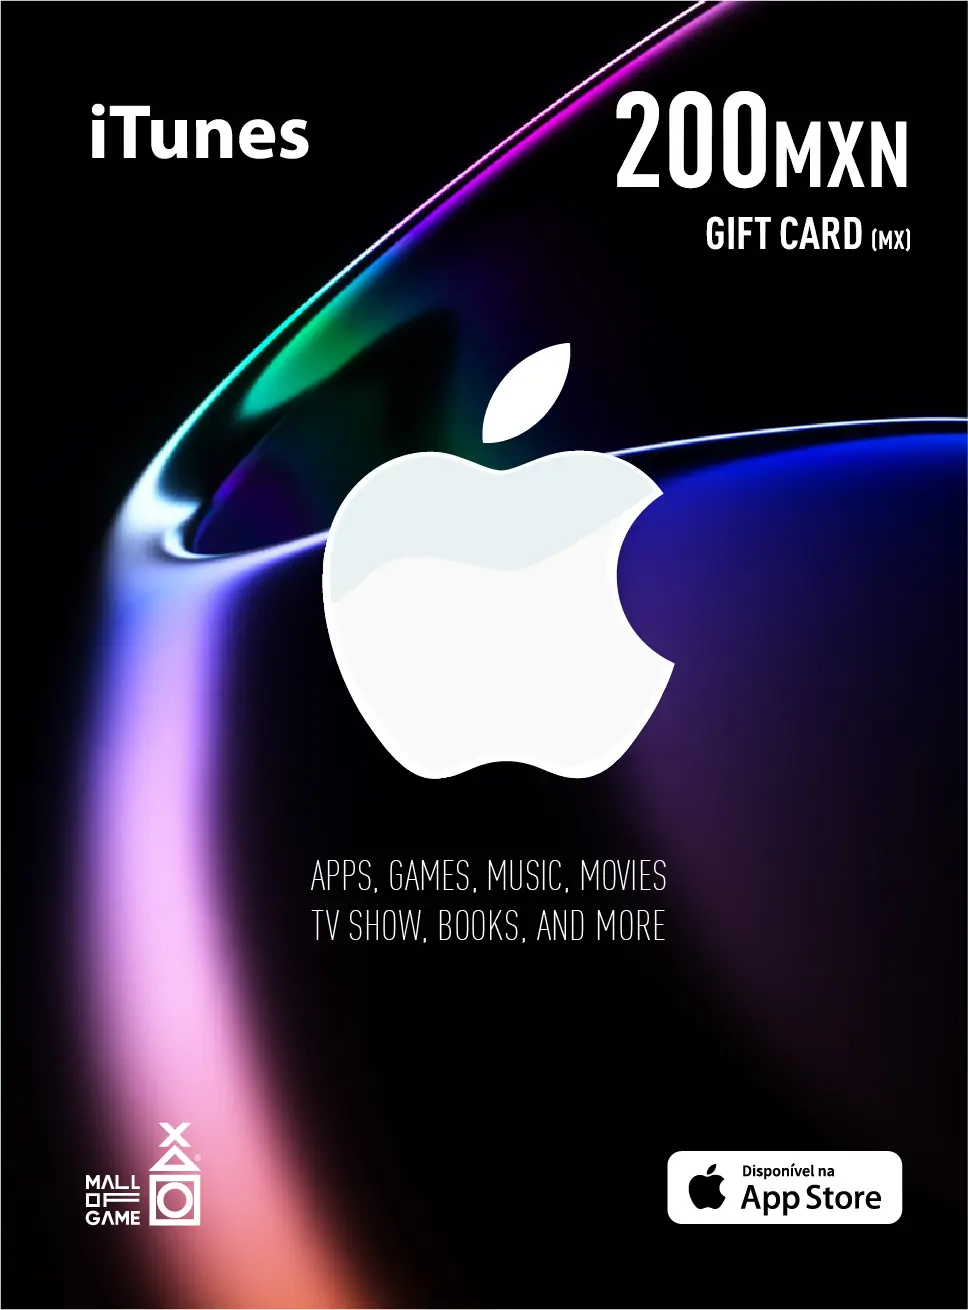 iTunes MXN200 Gift Card (MX)